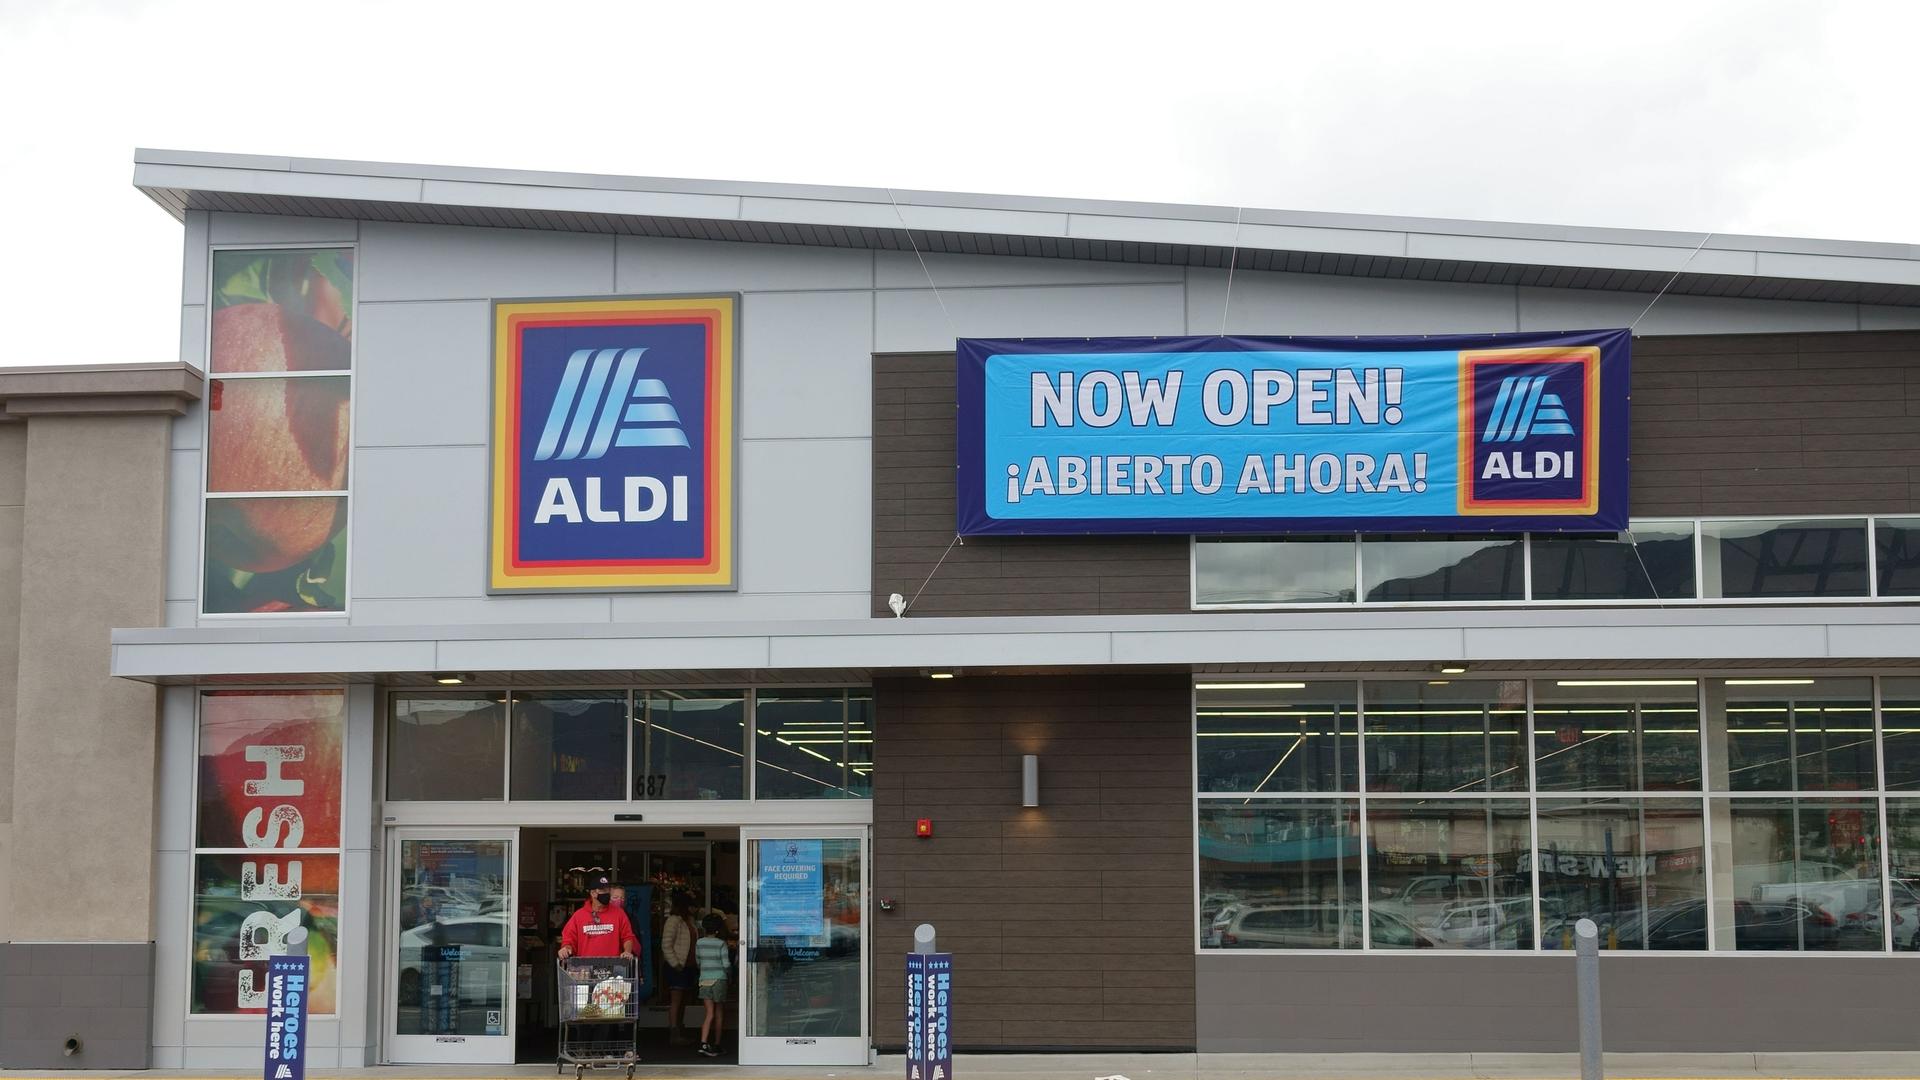 Eine neue Aldi-Filiale in Burbank in den USA mit dem Schild "Now Open!"